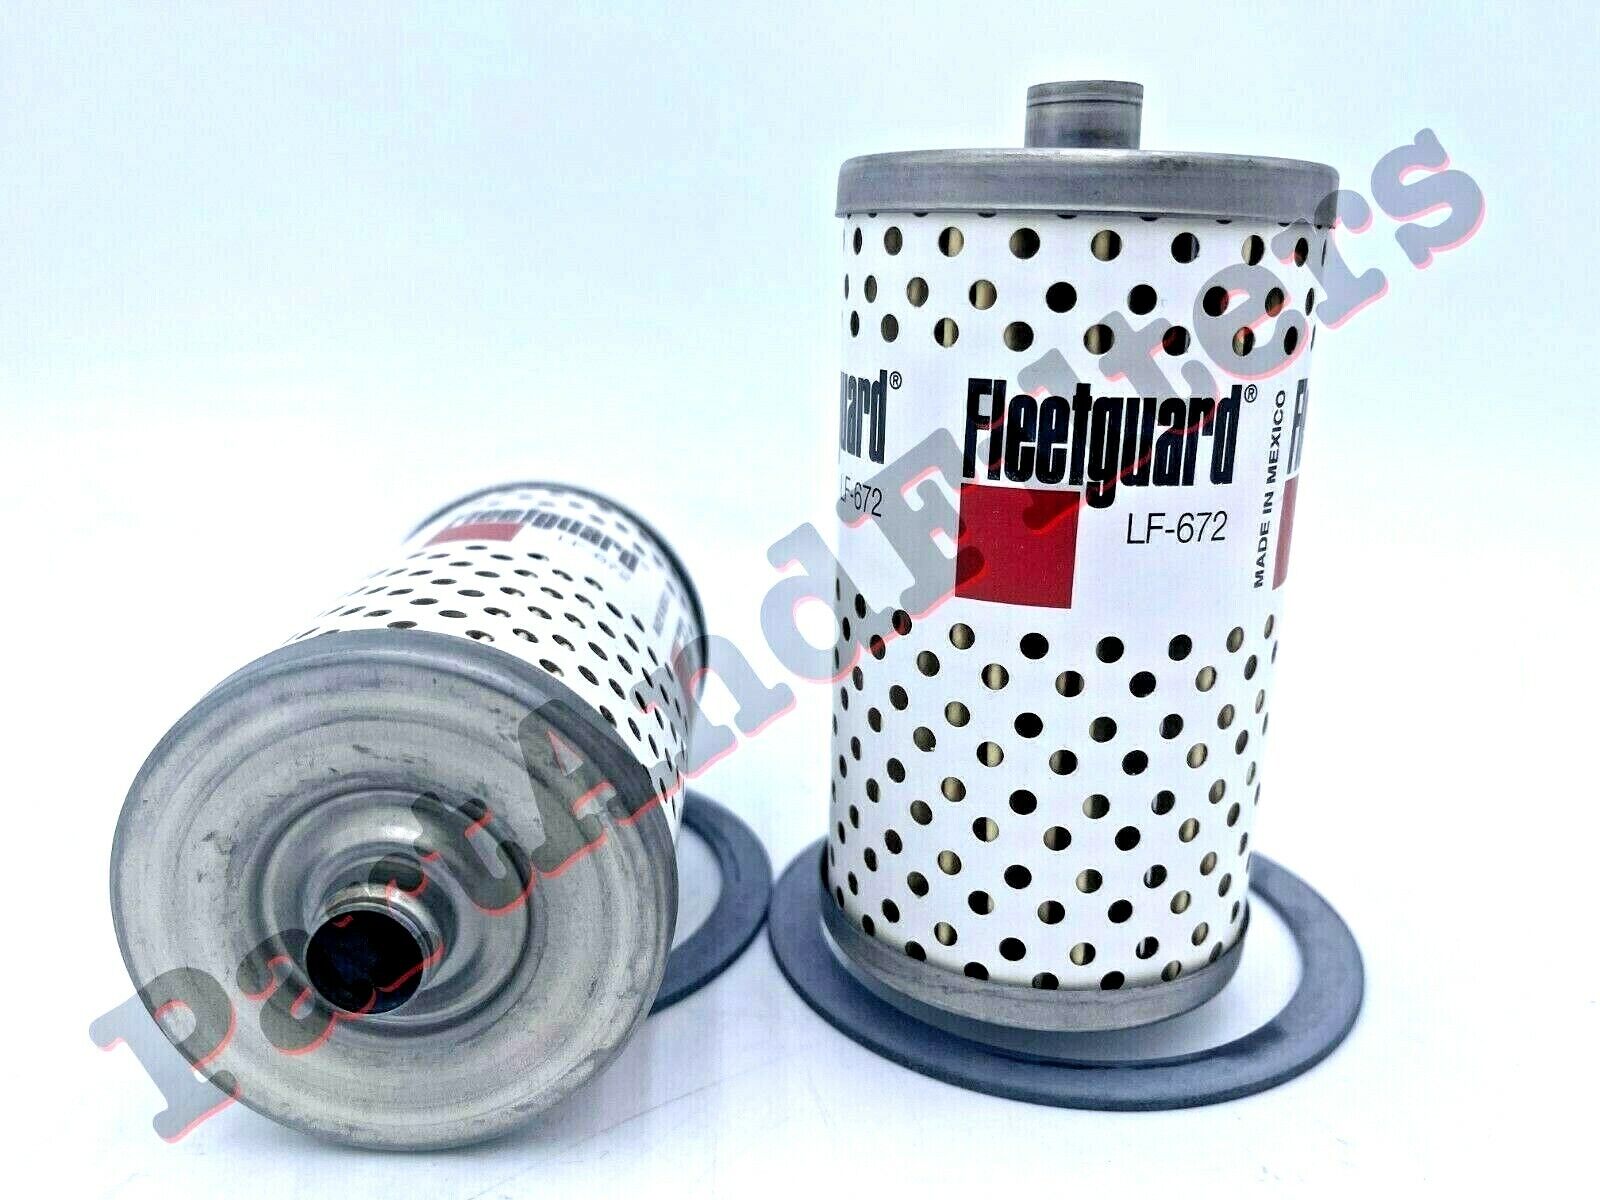 Fleetguard LF672  oil filter Fits Farmall IH Cub 154 184 185 LoBoy 